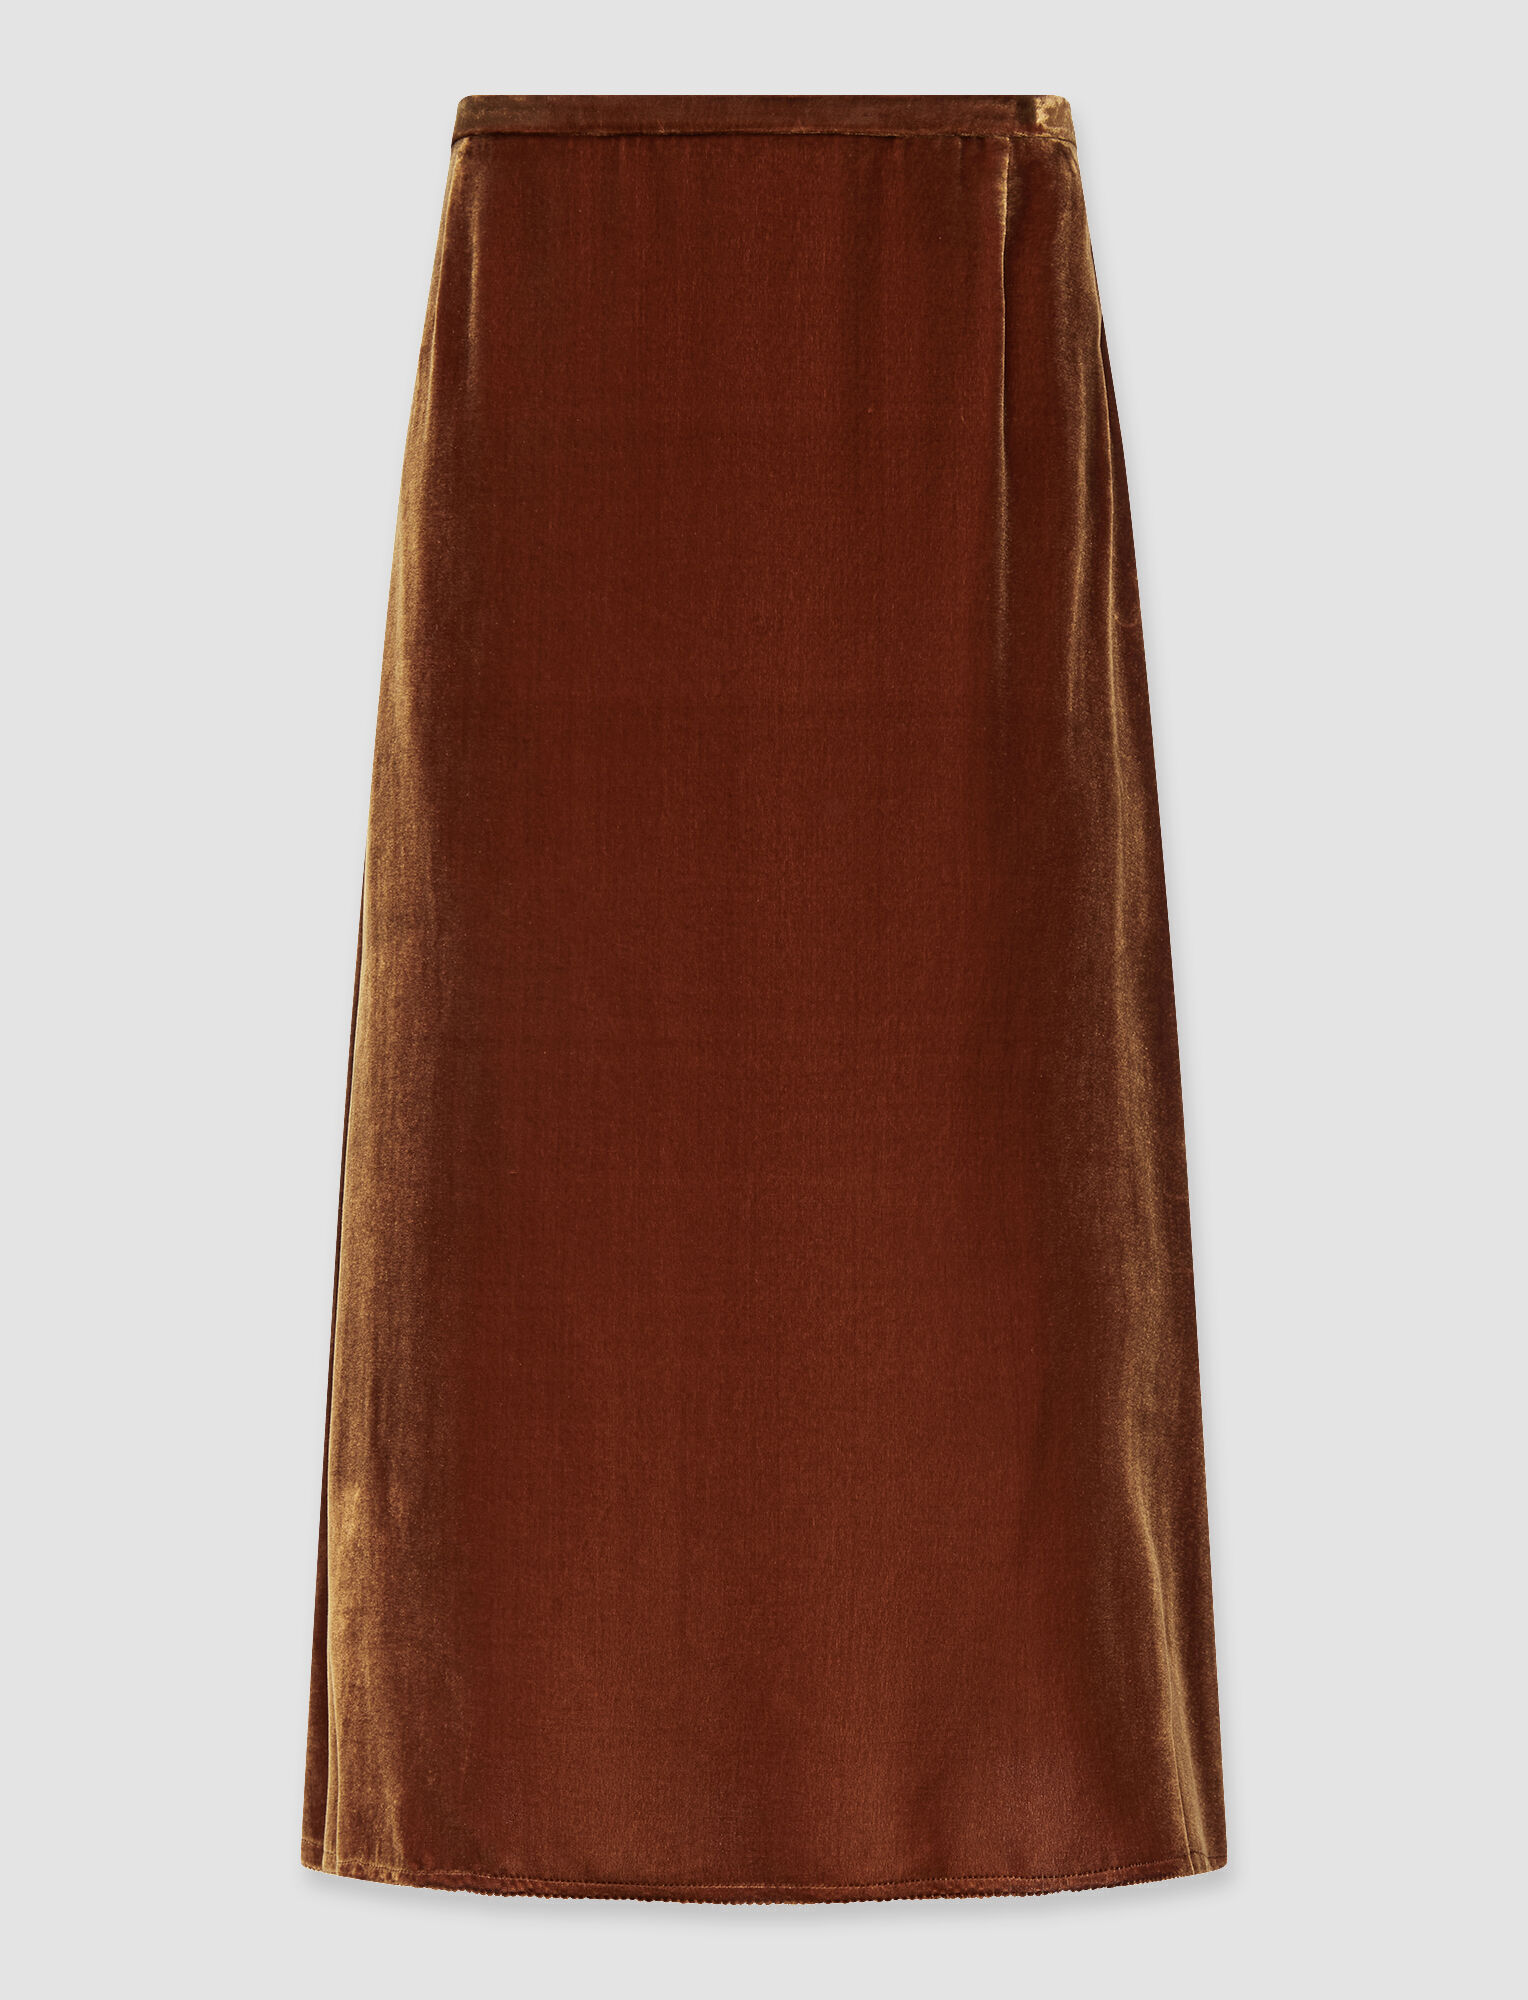 Joseph, Drapy Velvet Sabra Skirt, in Copper